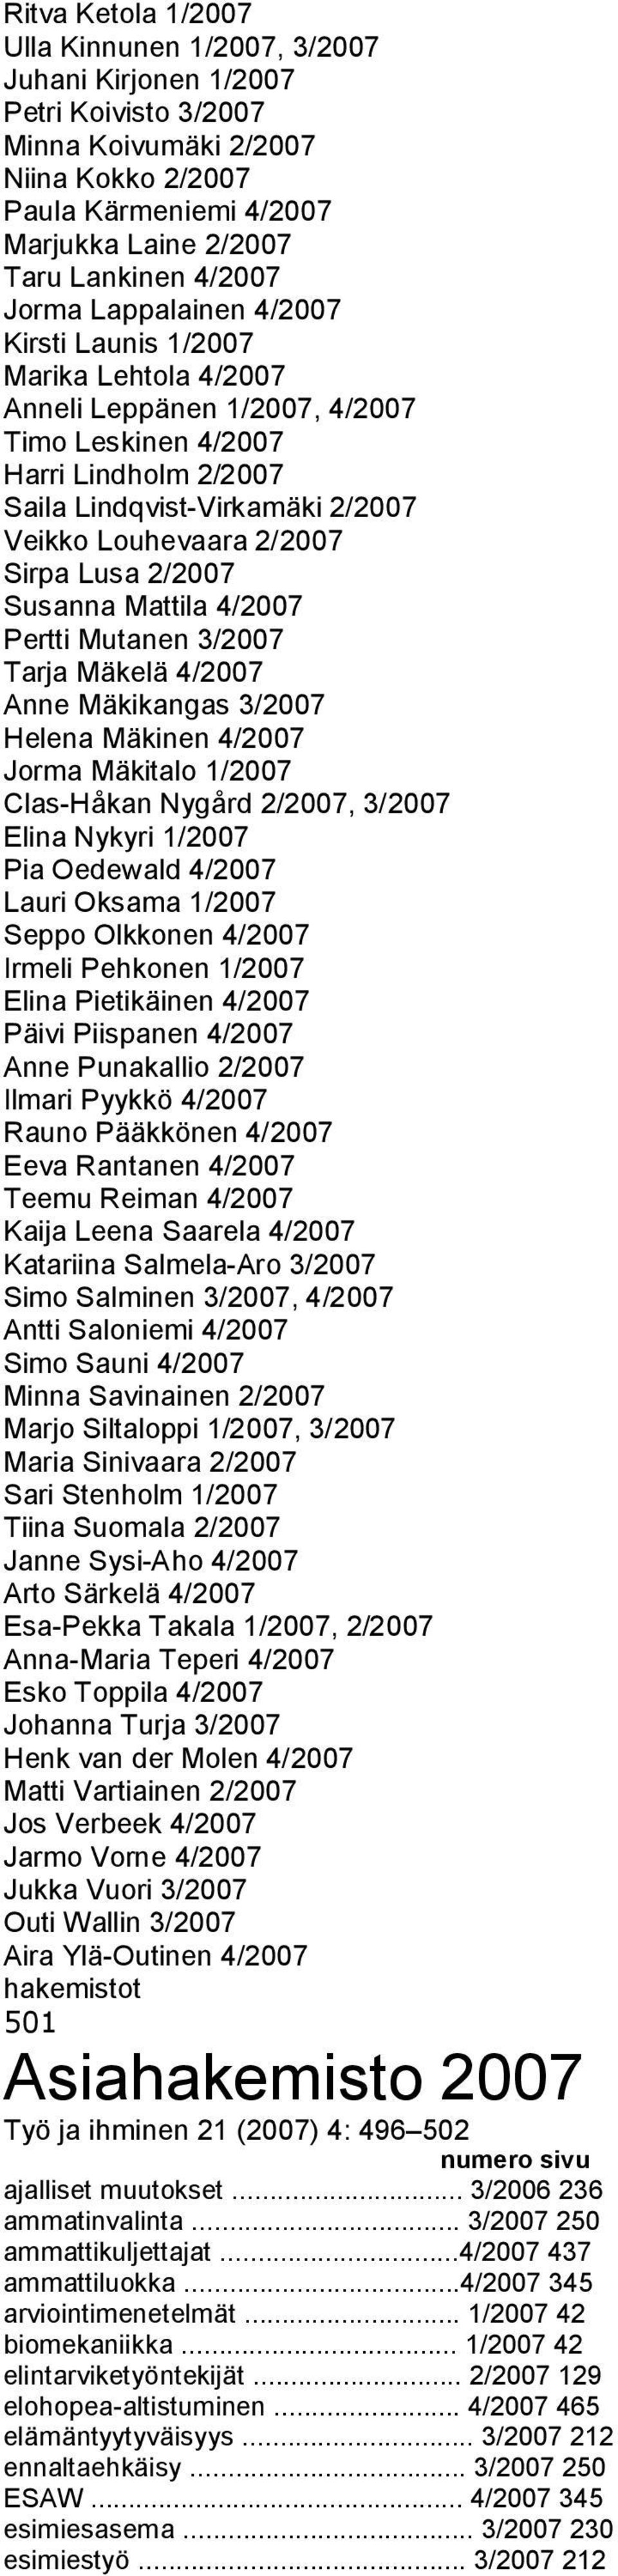 2/2007 Sirpa Lusa 2/2007 Susanna Mattila 4/2007 Pertti Mutanen 3/2007 Tarja Mäkelä 4/2007 Anne Mäkikangas 3/2007 Helena Mäkinen 4/2007 Jorma Mäkitalo 1/2007 Clas Håkan Nygård 2/2007, 3/2007 Elina